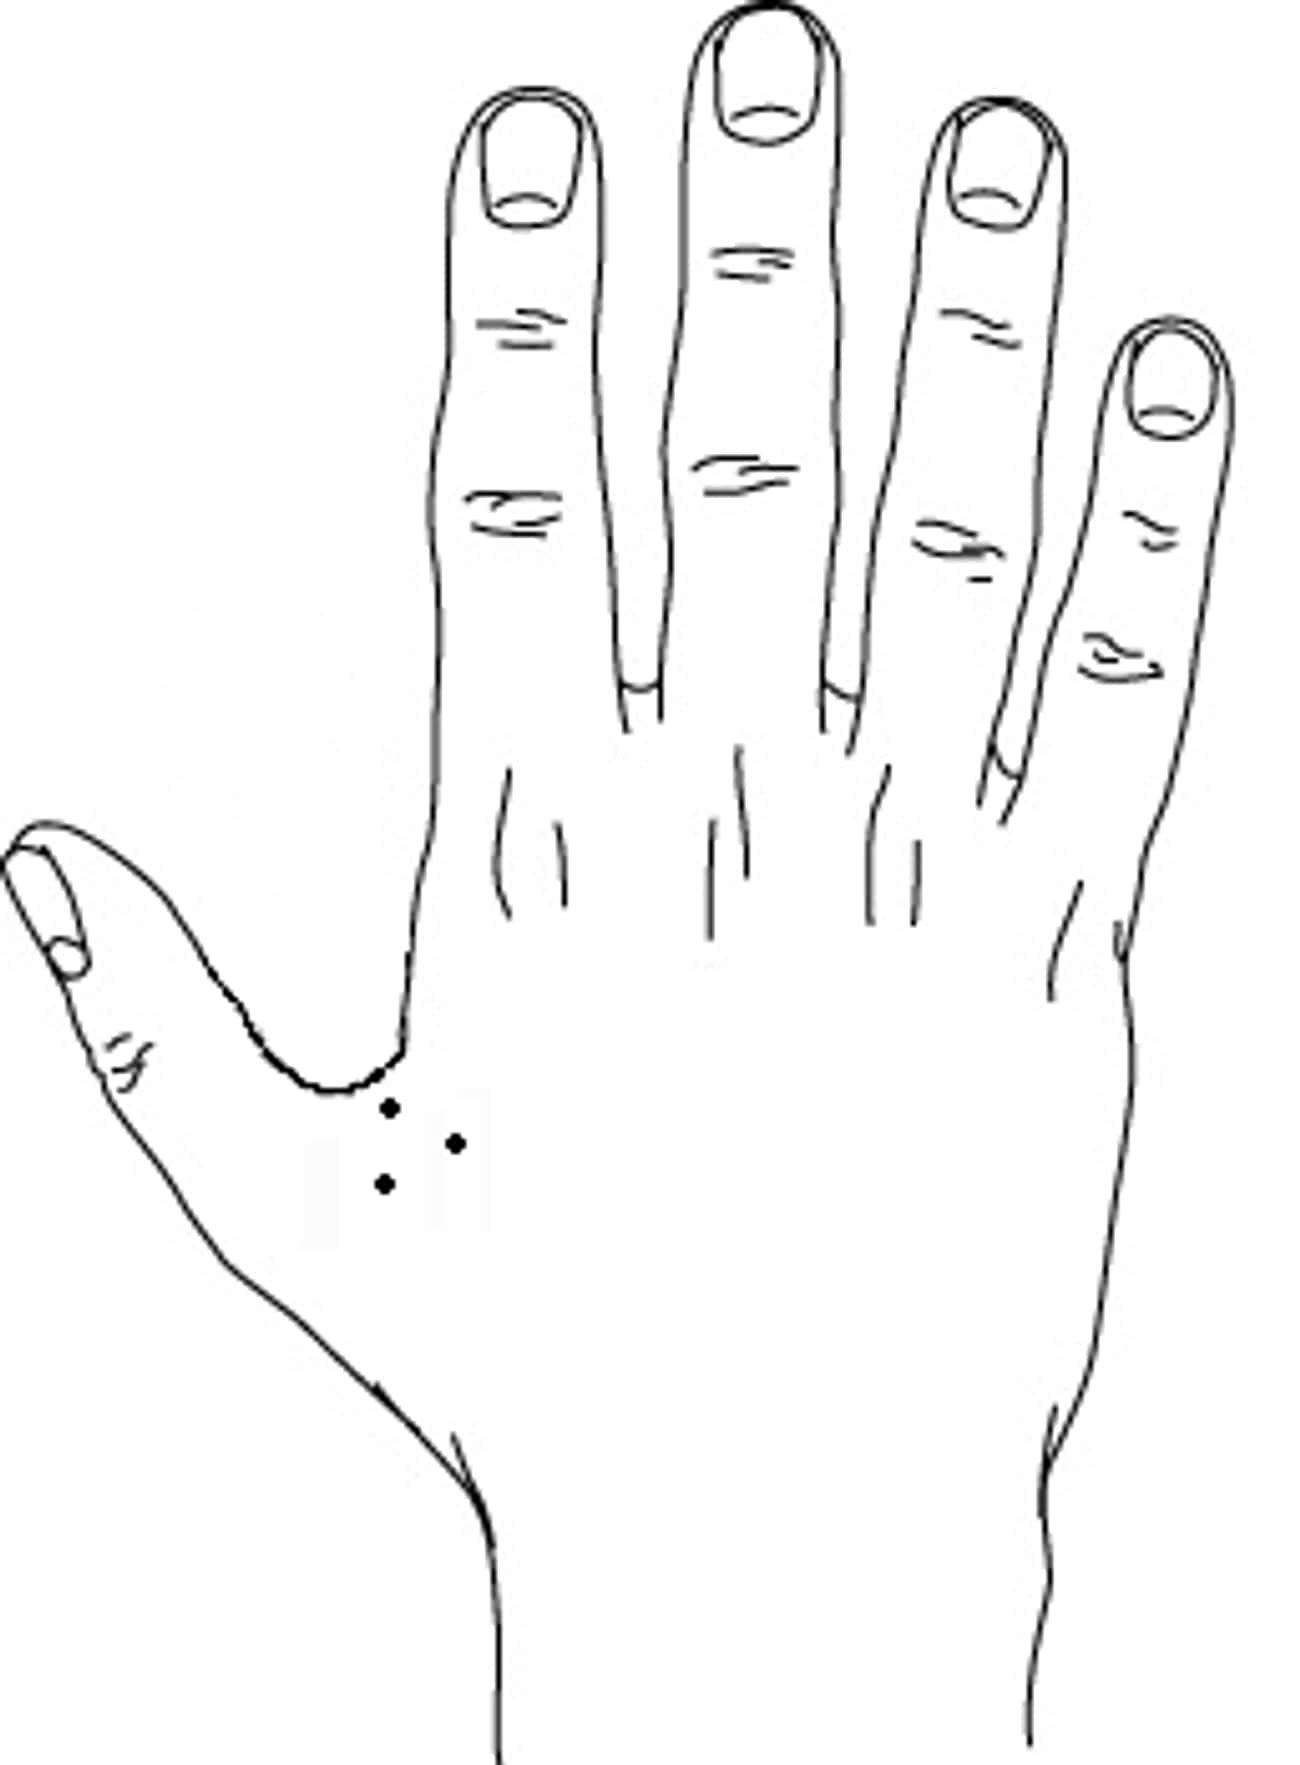 Зековские наколки между большим и указательным пальцем